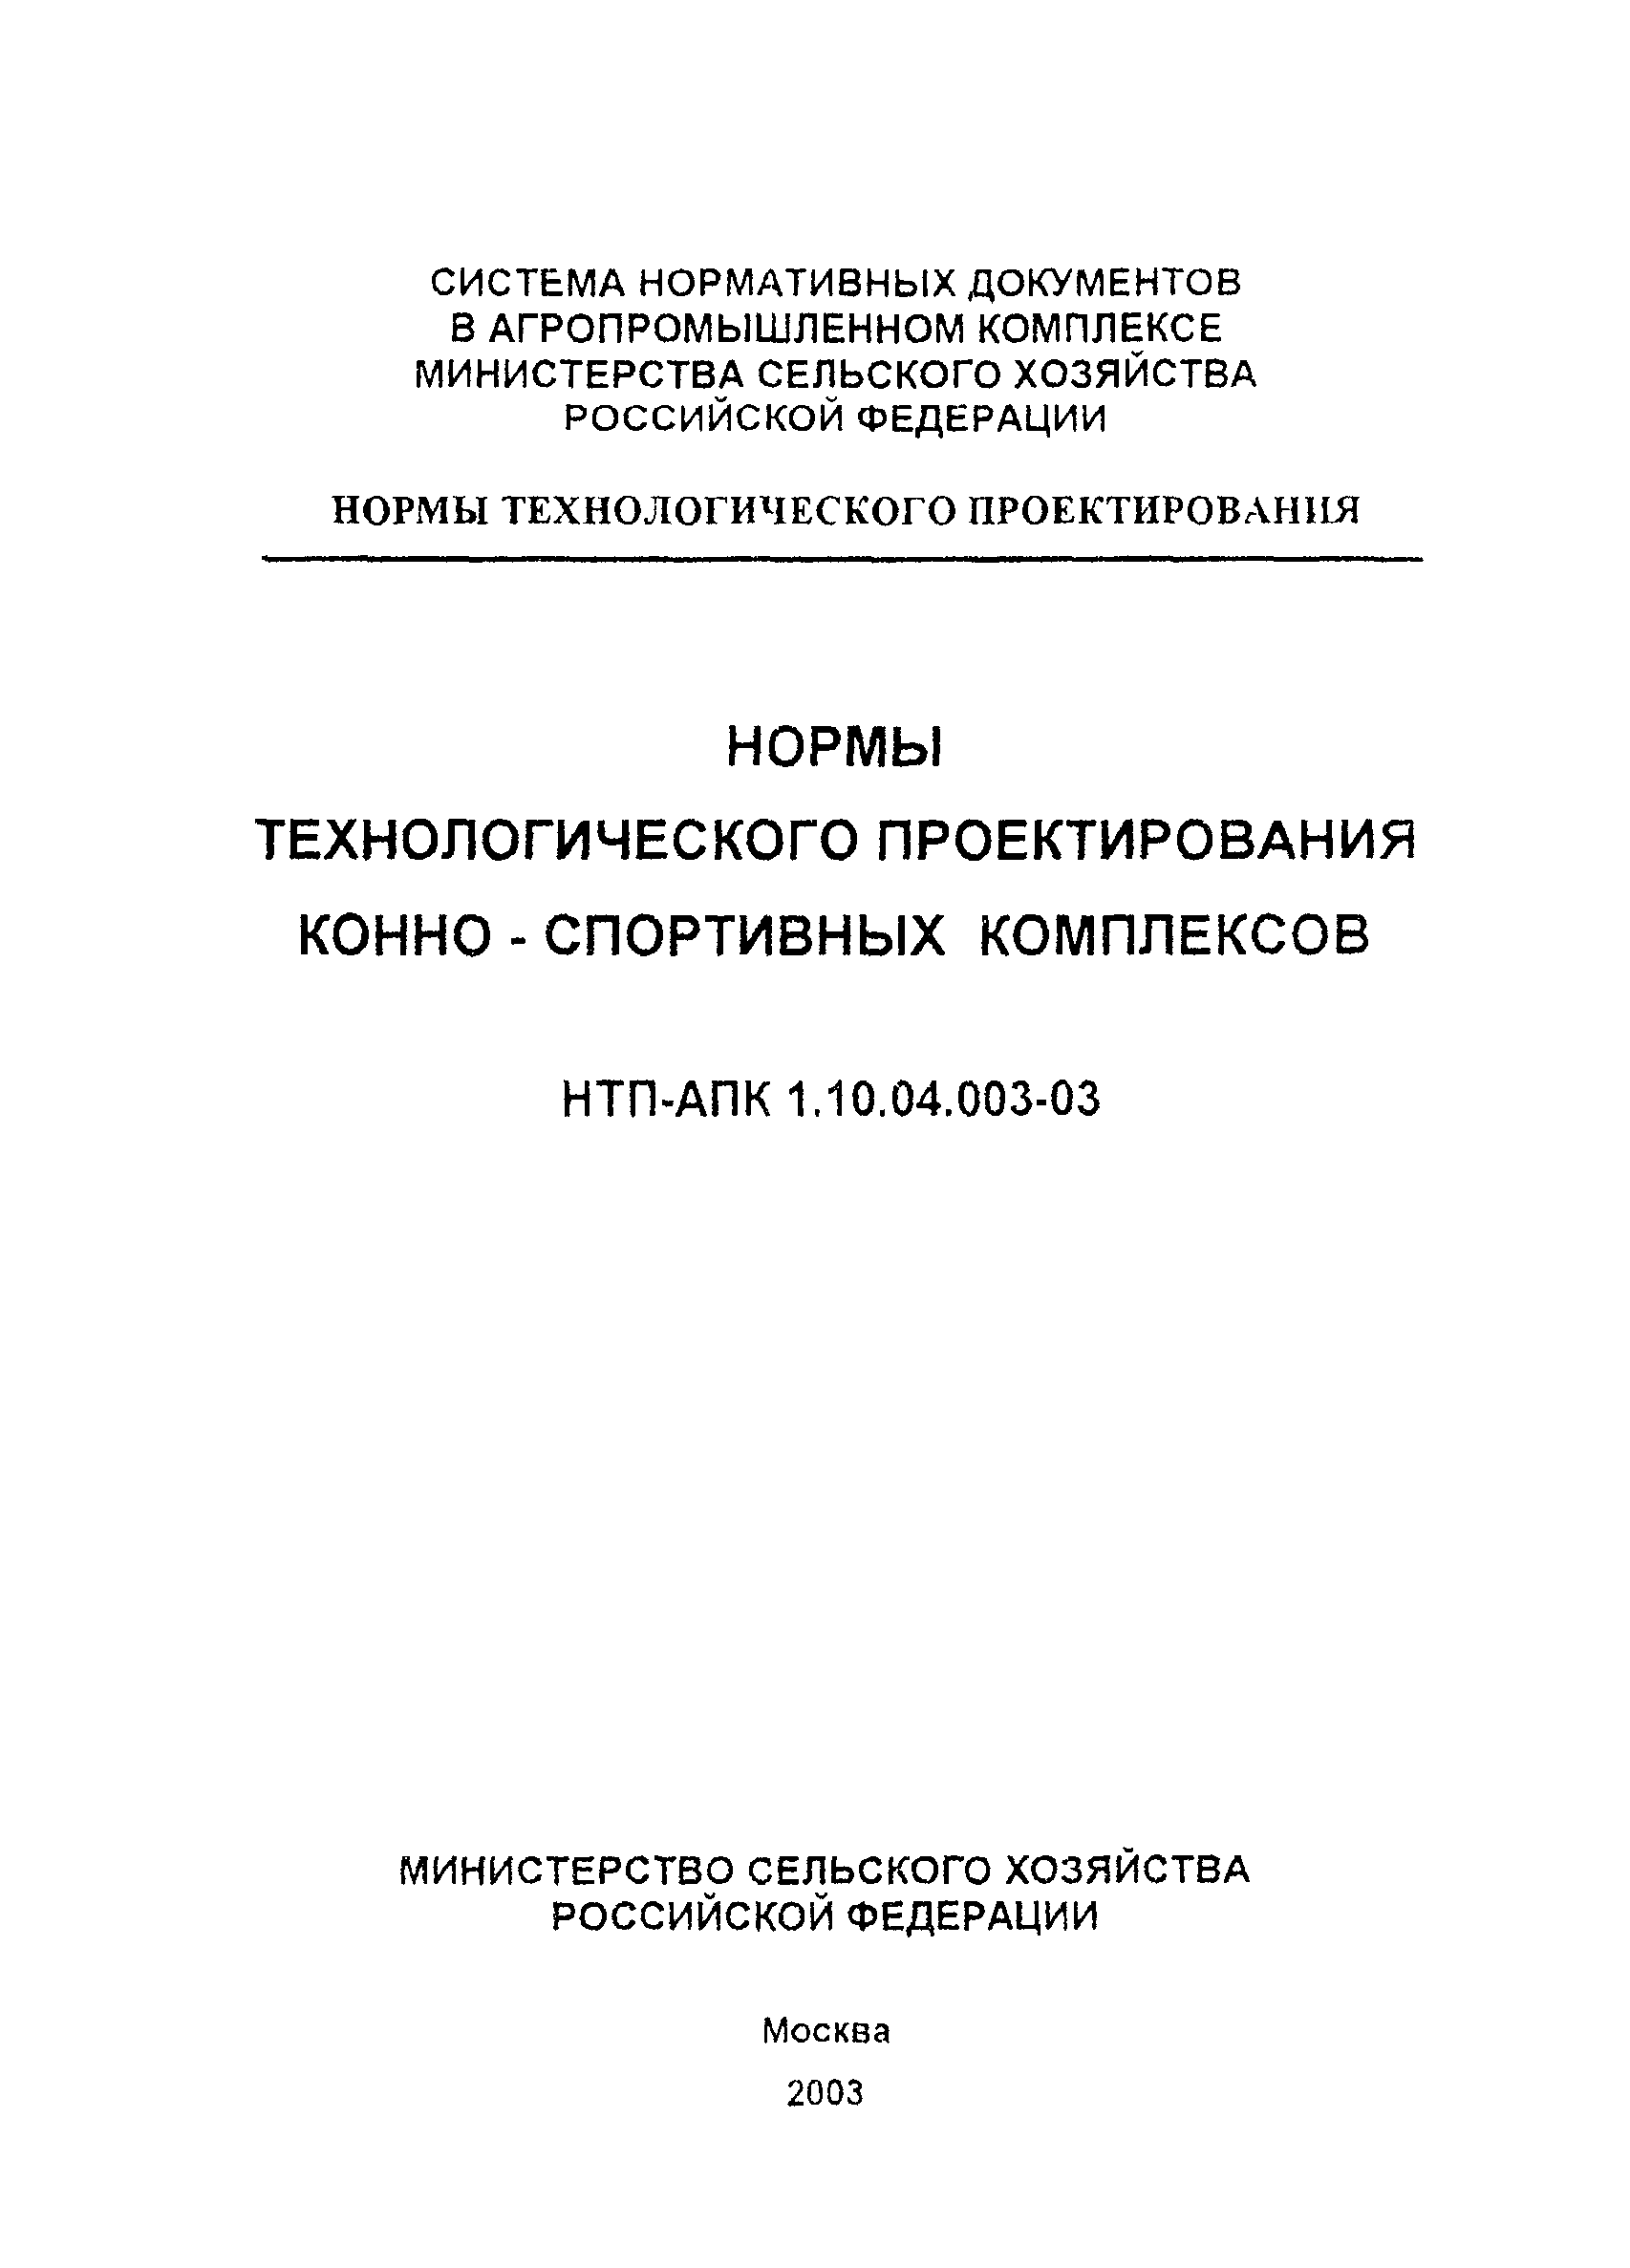 НТП-АПК 1.10.04.003-03